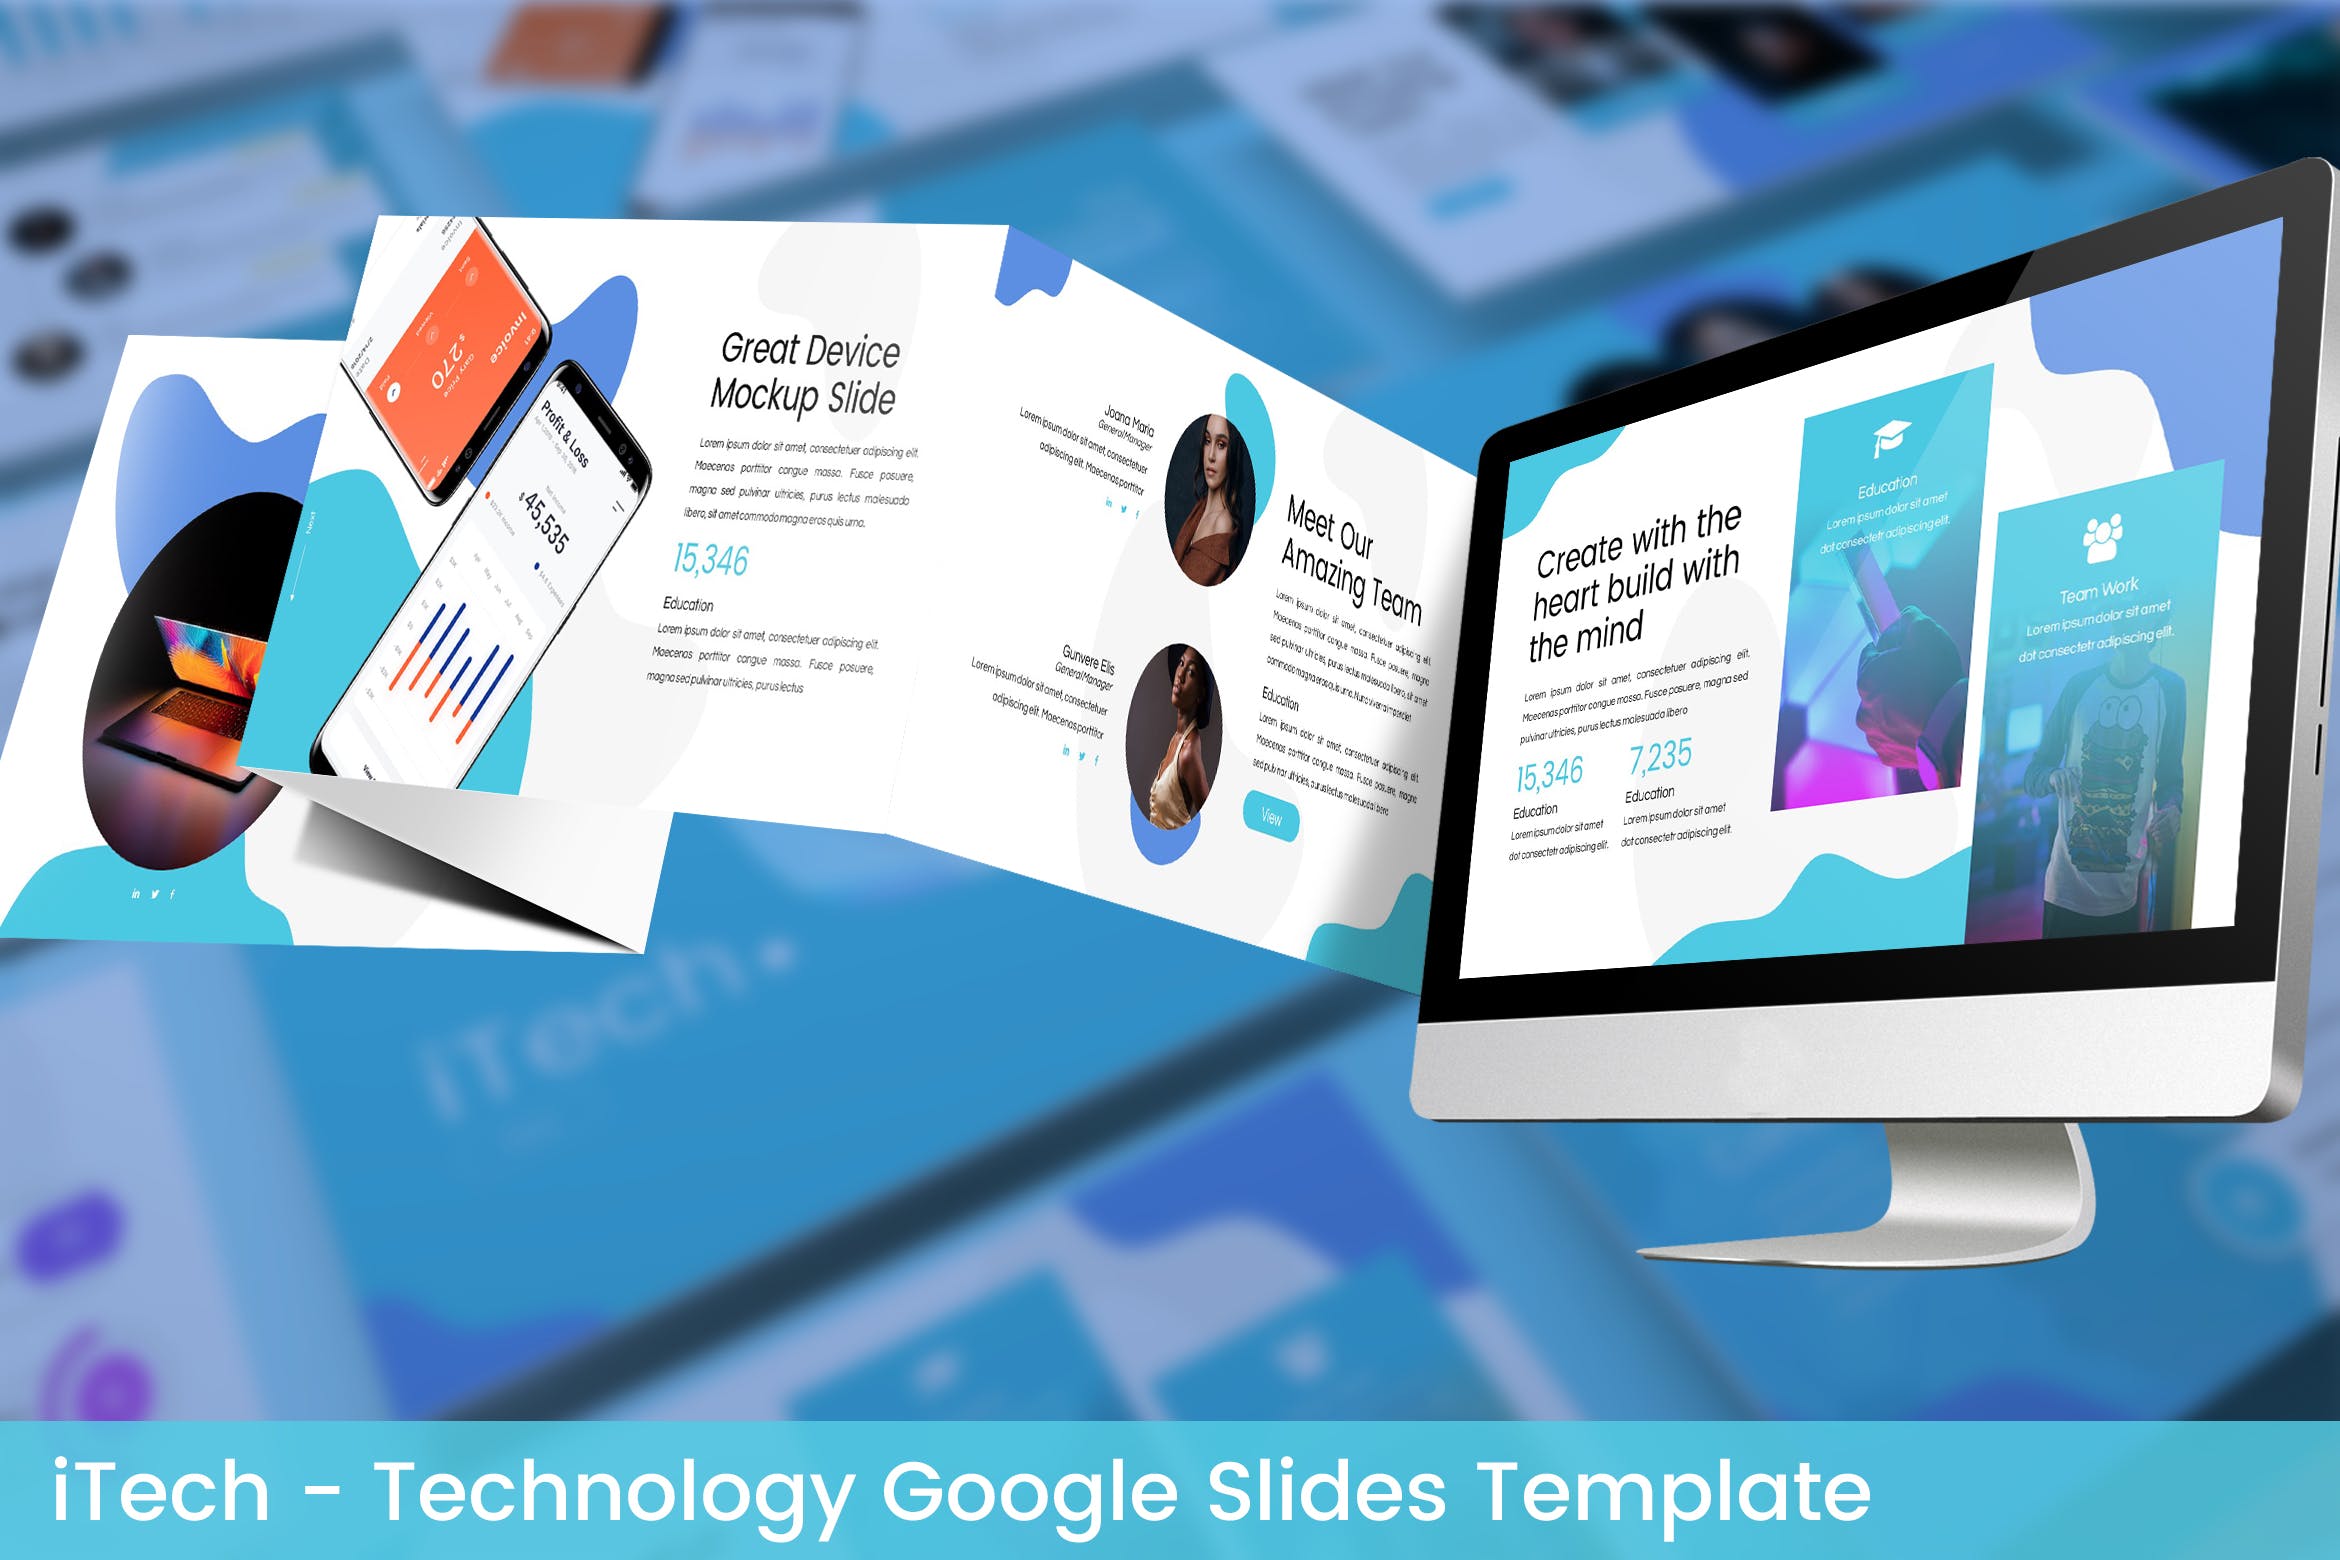 互联网科技公司简介16设计素材网精选谷歌演示模板 iTech – Technology Google Slides Template插图